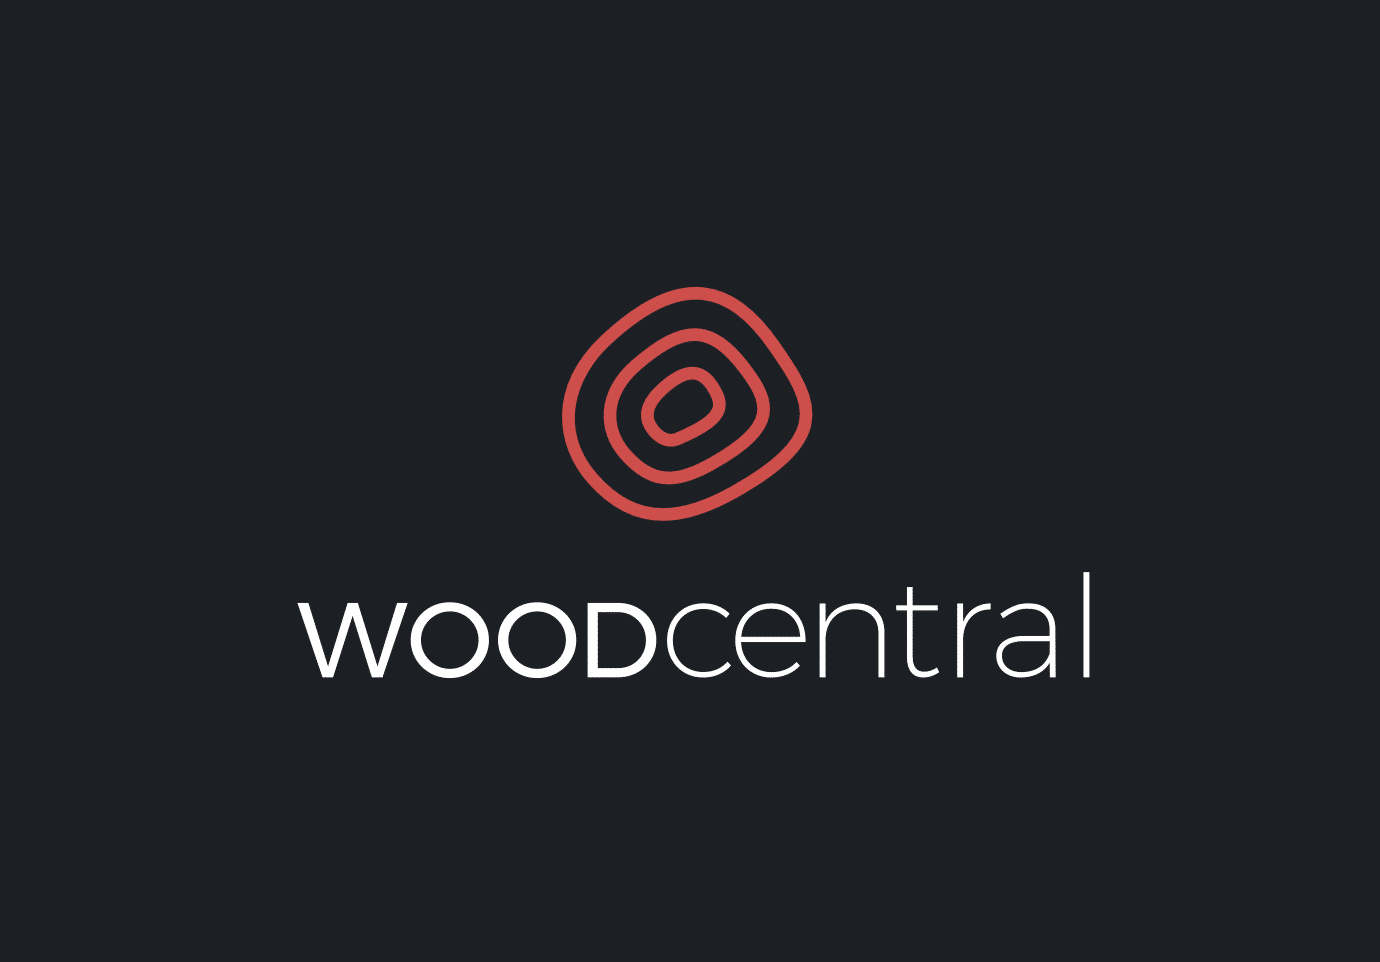 Wood Central logo dark version